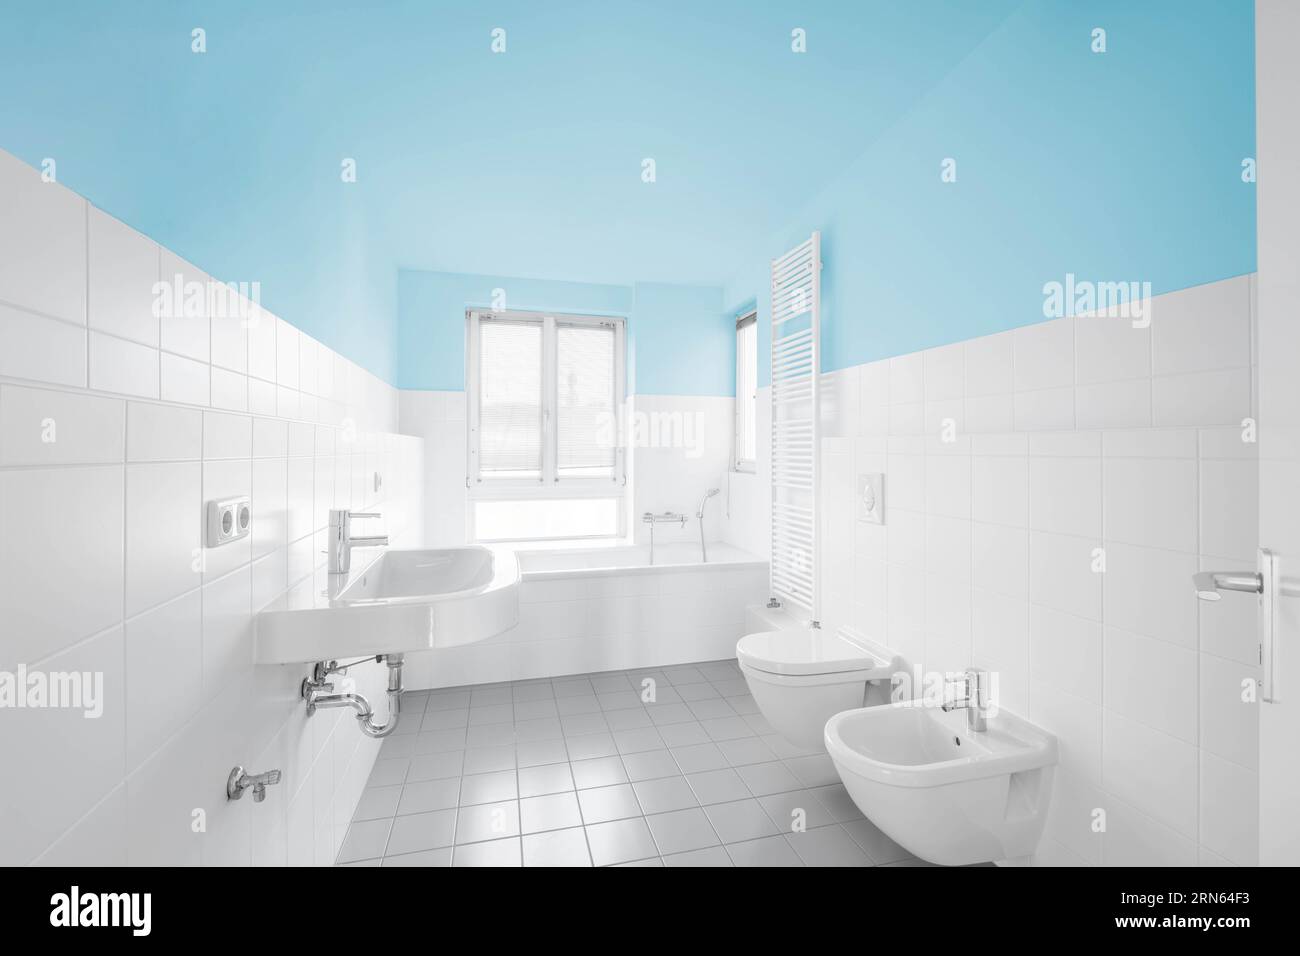 salle de bains bleue et blanche - baignoire carrelée moderne Banque D'Images